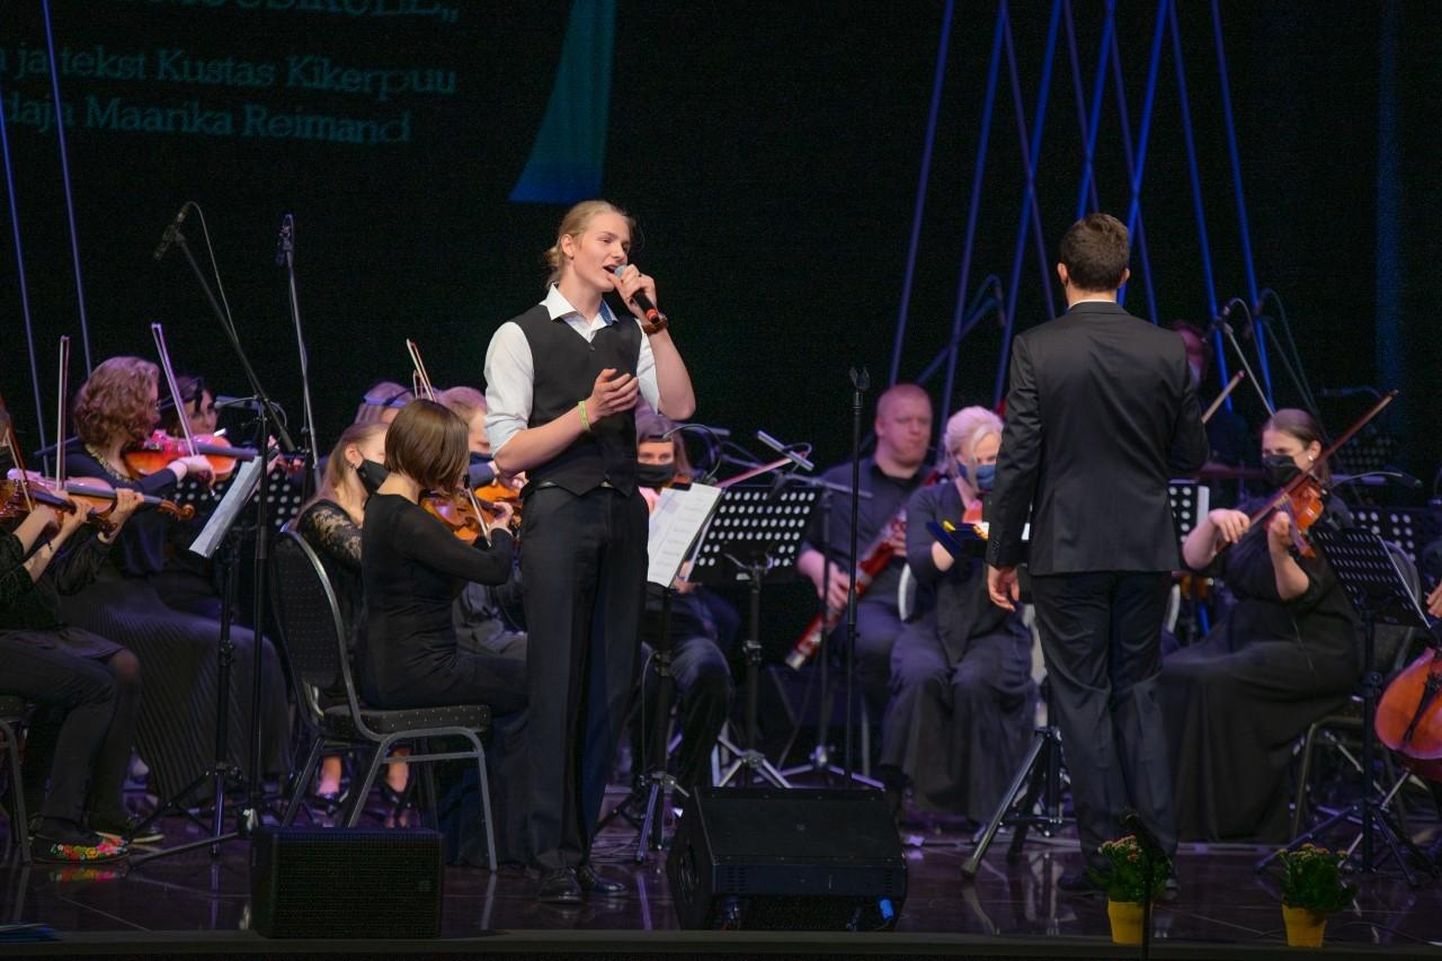 Eesti meestelaulu seltsi XII võistulaulmisel laulis oma vanuserühmas ennast esikohale Viljandi muusikakooli õpilane Karl-Vahur Vingisaar.